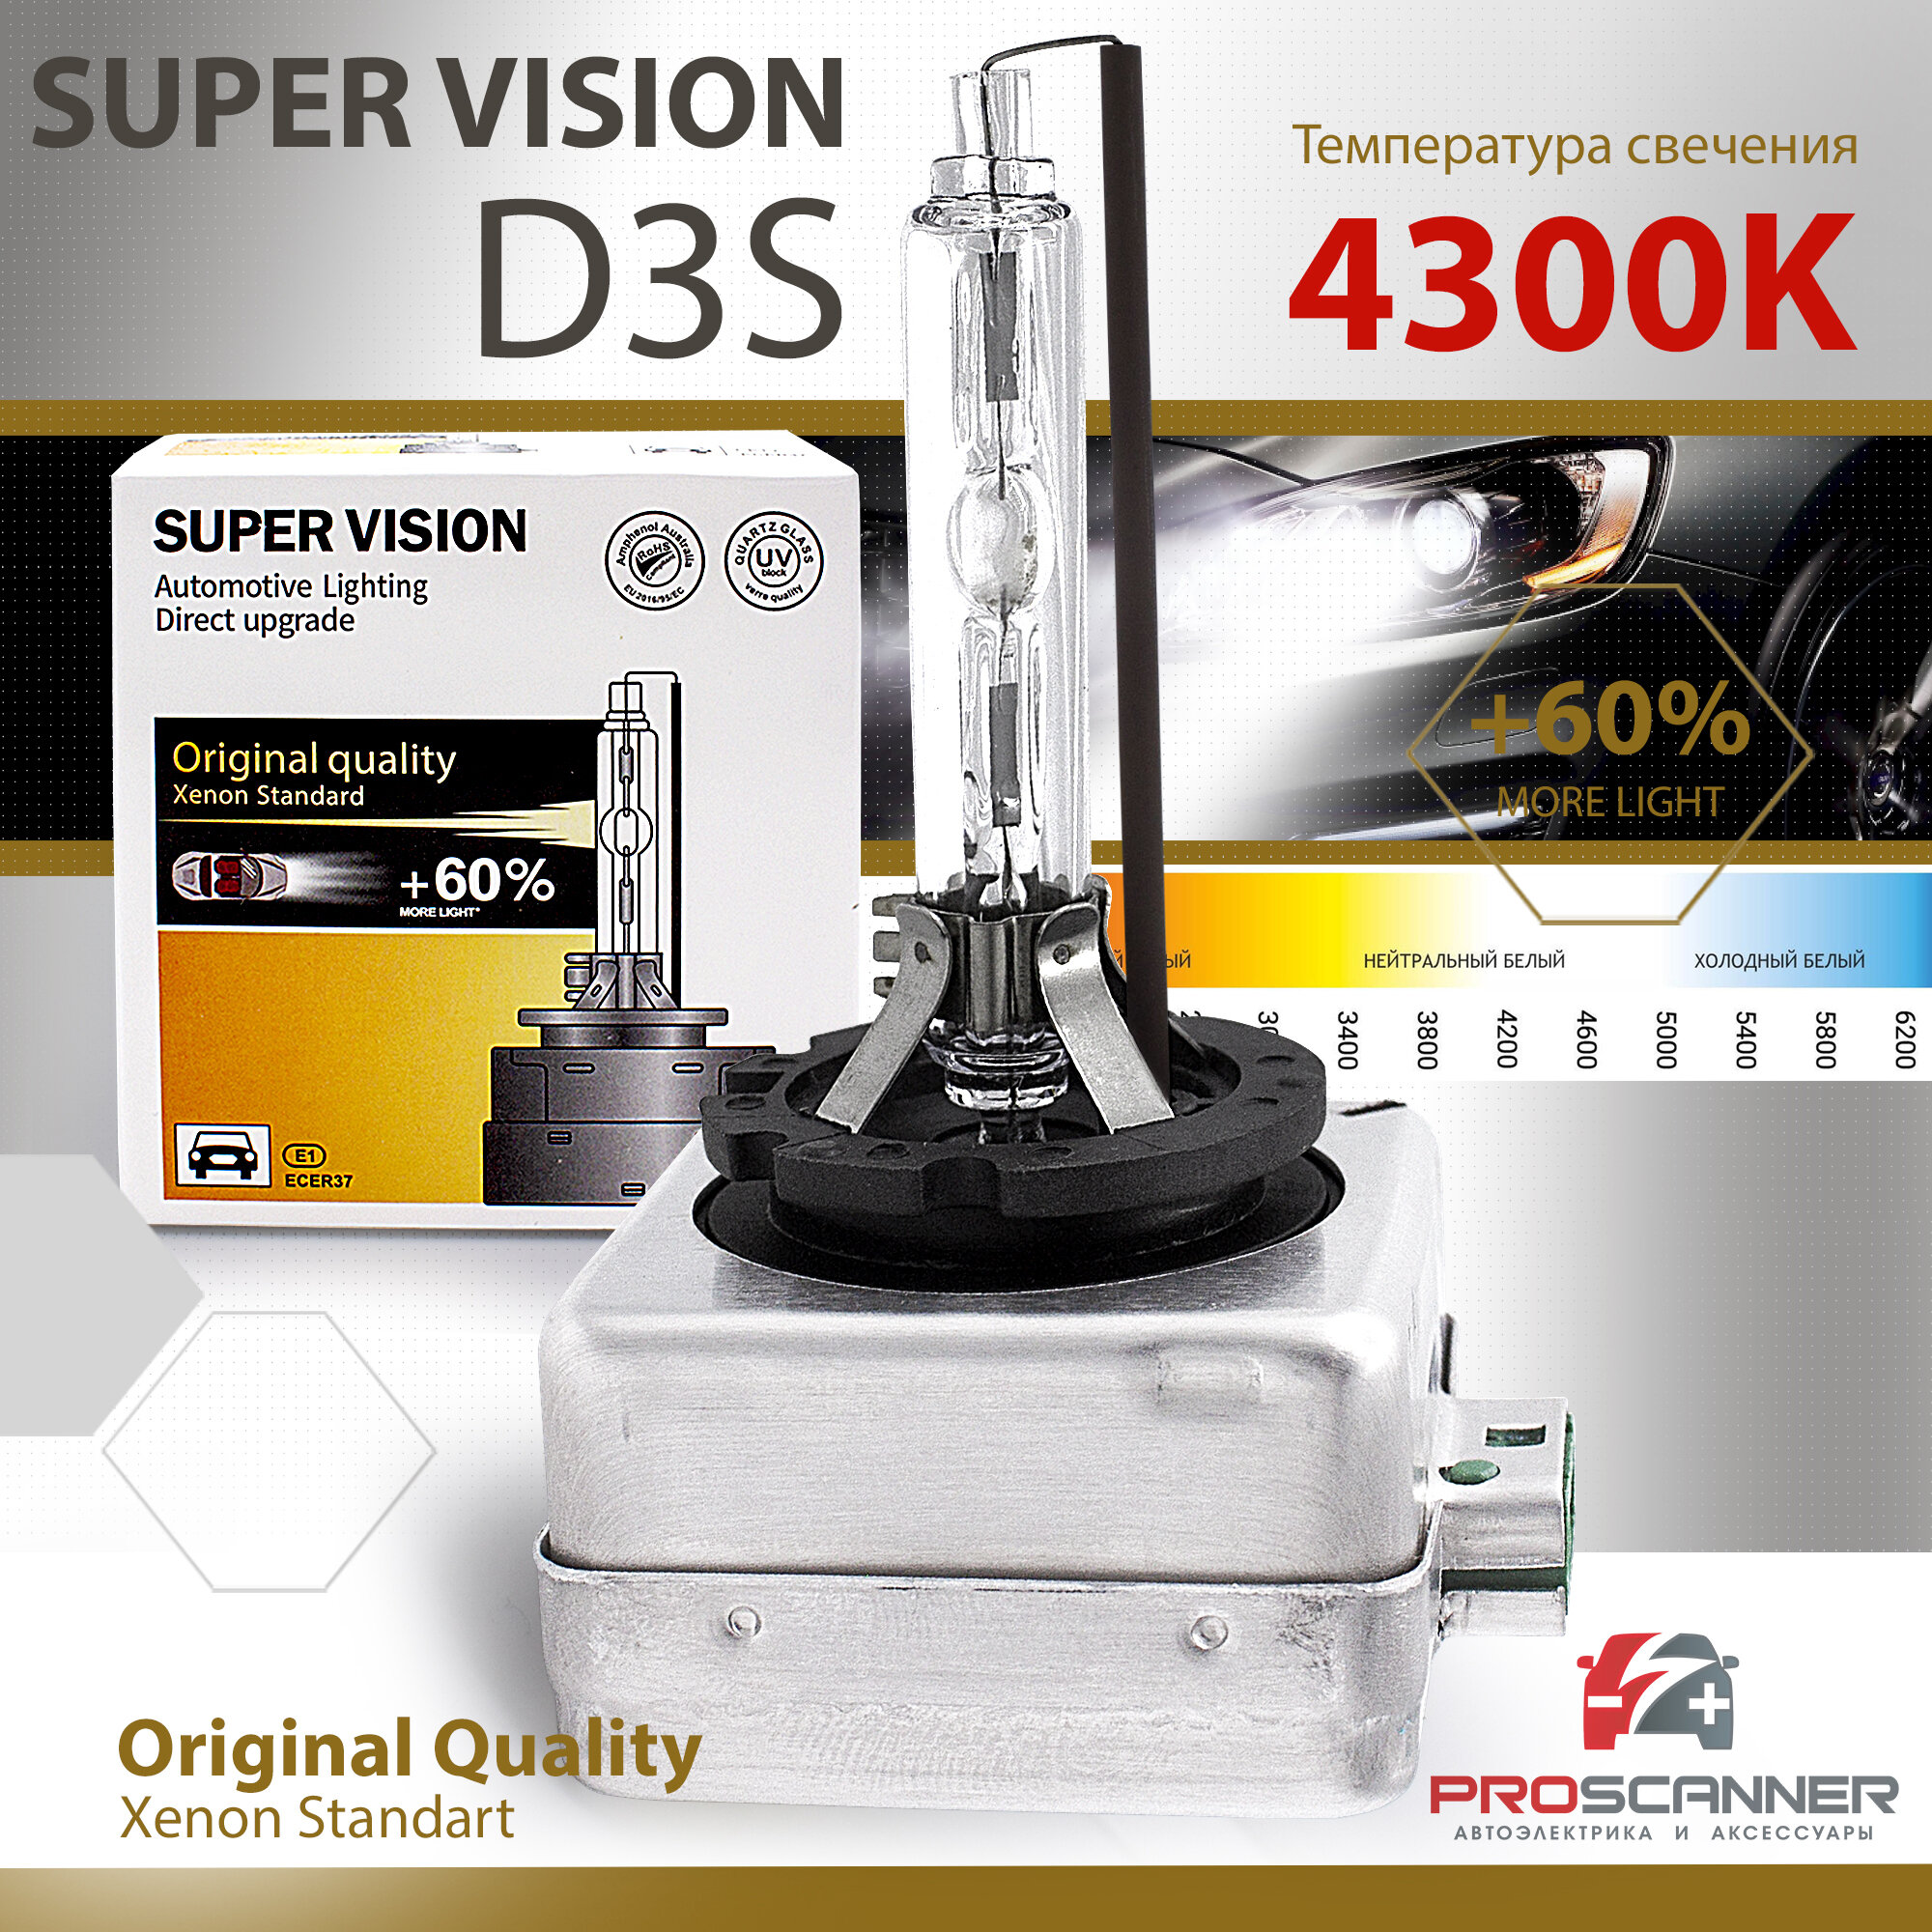 Ксеноновая лампа Super Vision D3S 4300K для автомобиля штатный ксенон, питание 12V, мощность 35W, 1 штука